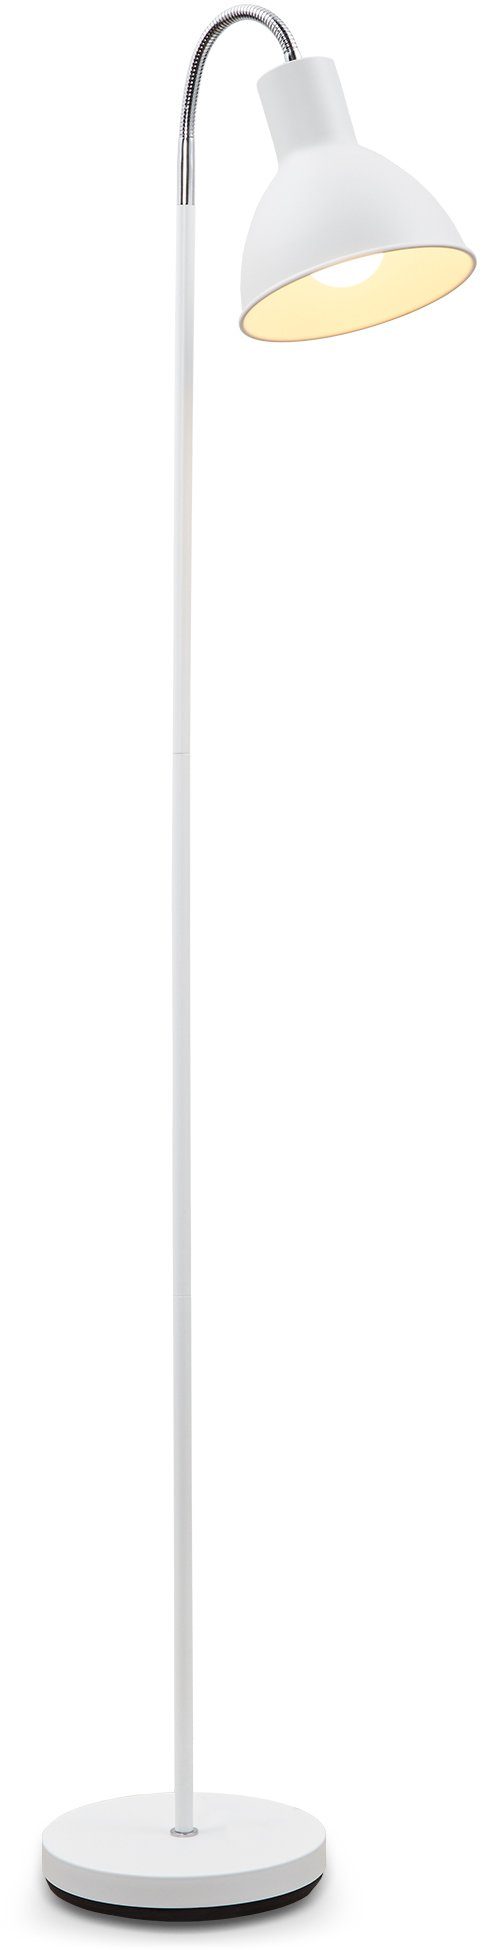 B.K.Licht LED Stehlampe, ohne Leuchtmittel, Stehleuchte Design Industrial Stand-Leuchte schwenkbar Warmweiß, Metall E27 weiß